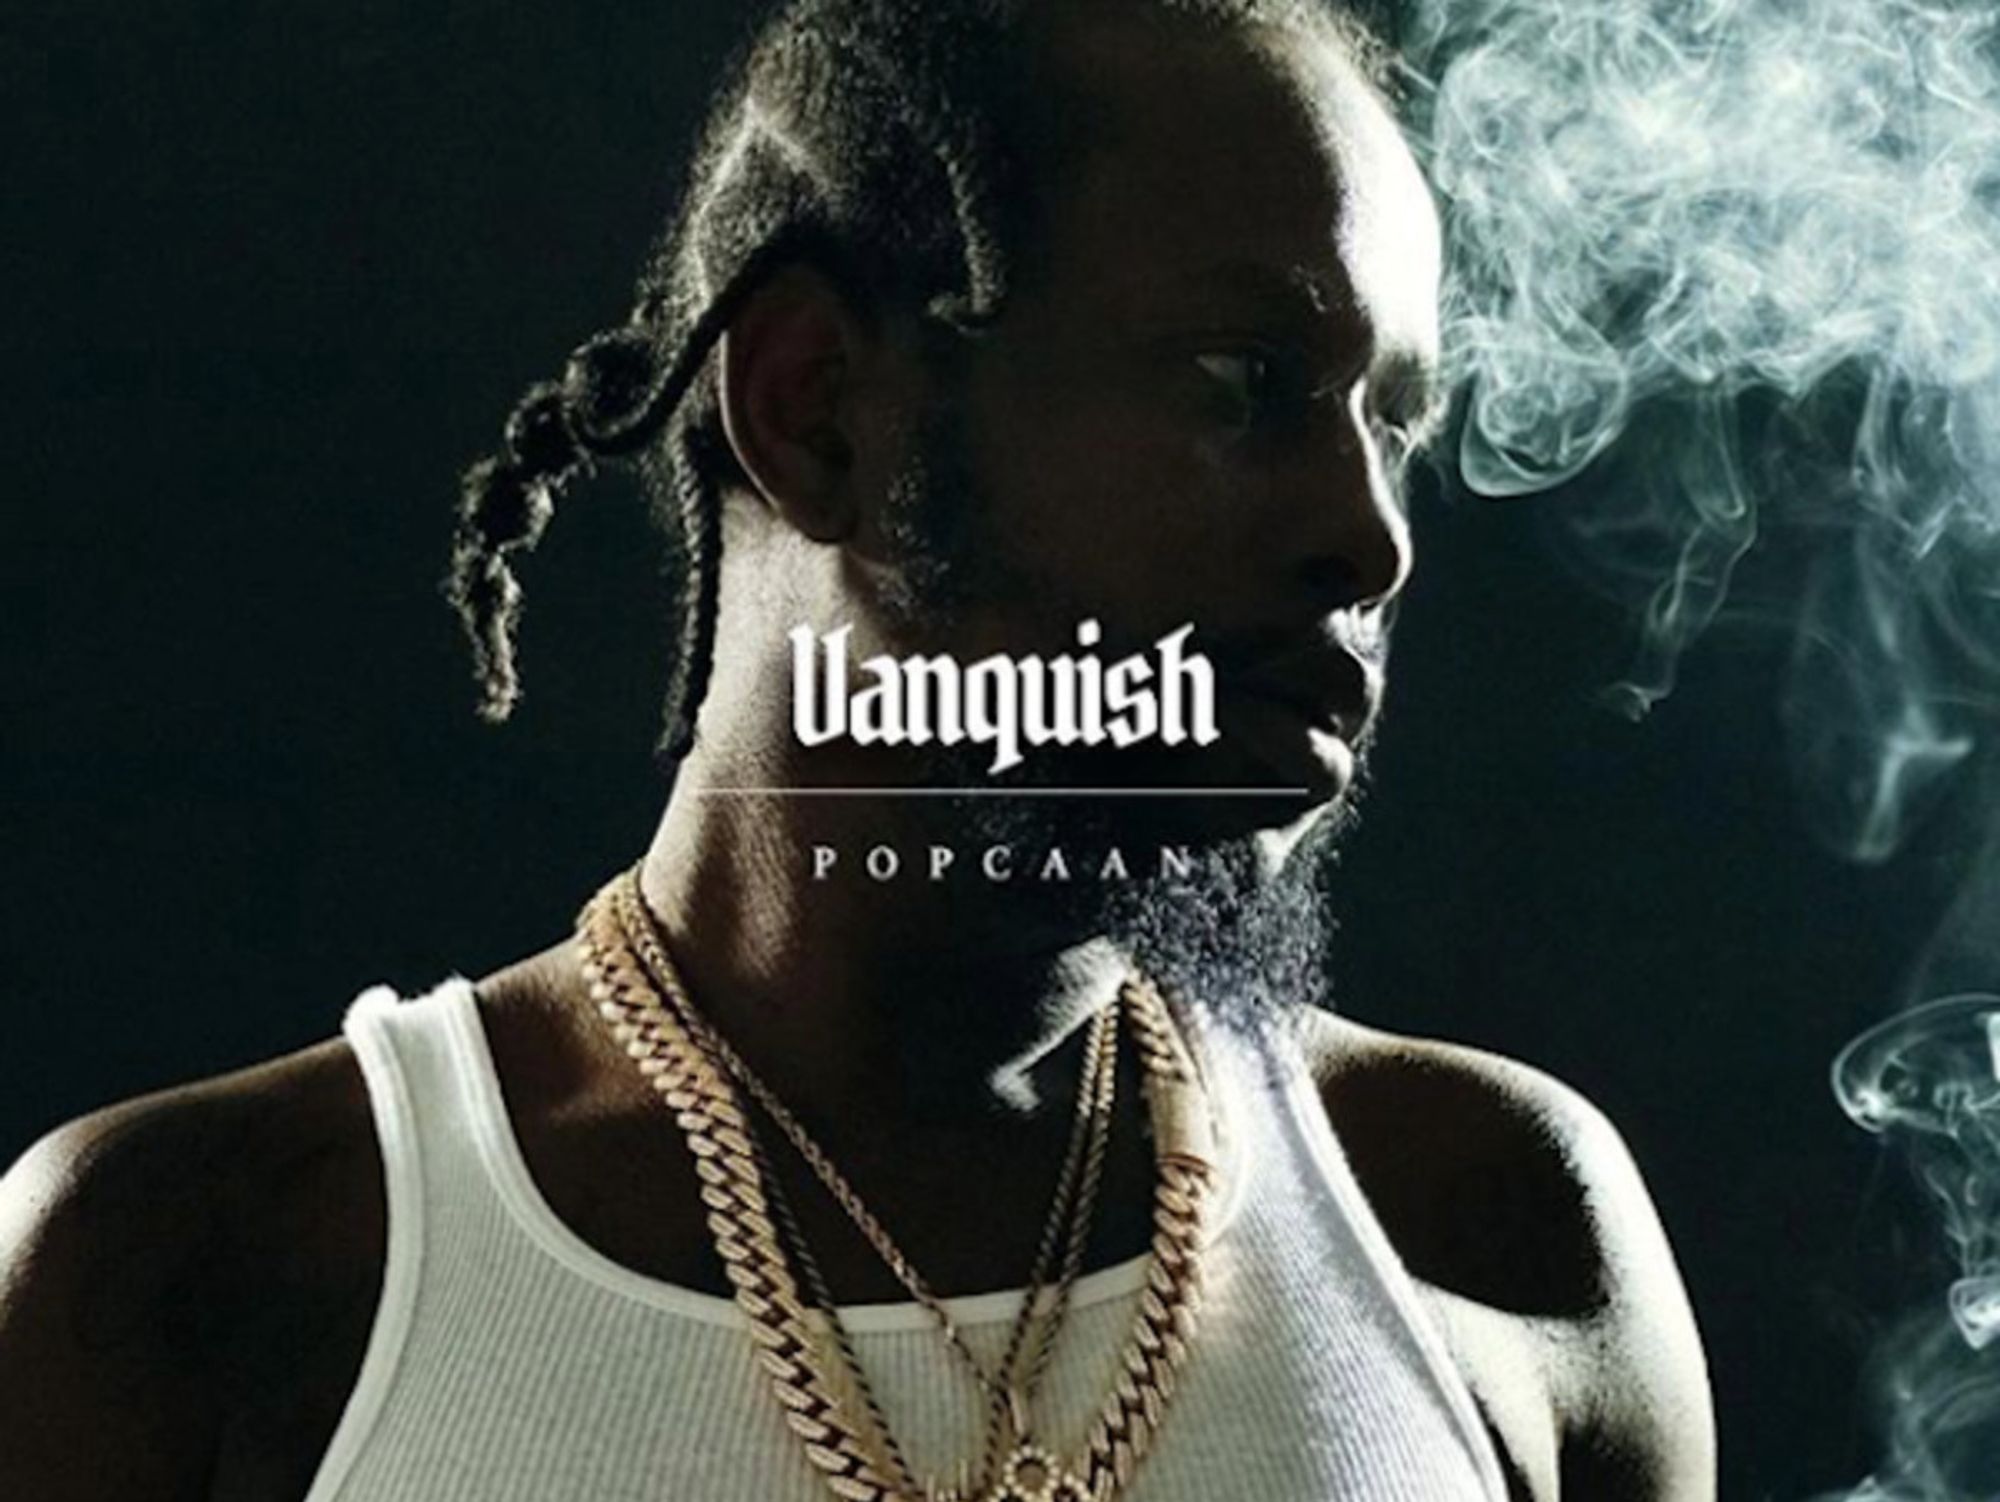 Listen to Popcaan's New Mixtape 'Vanquish'